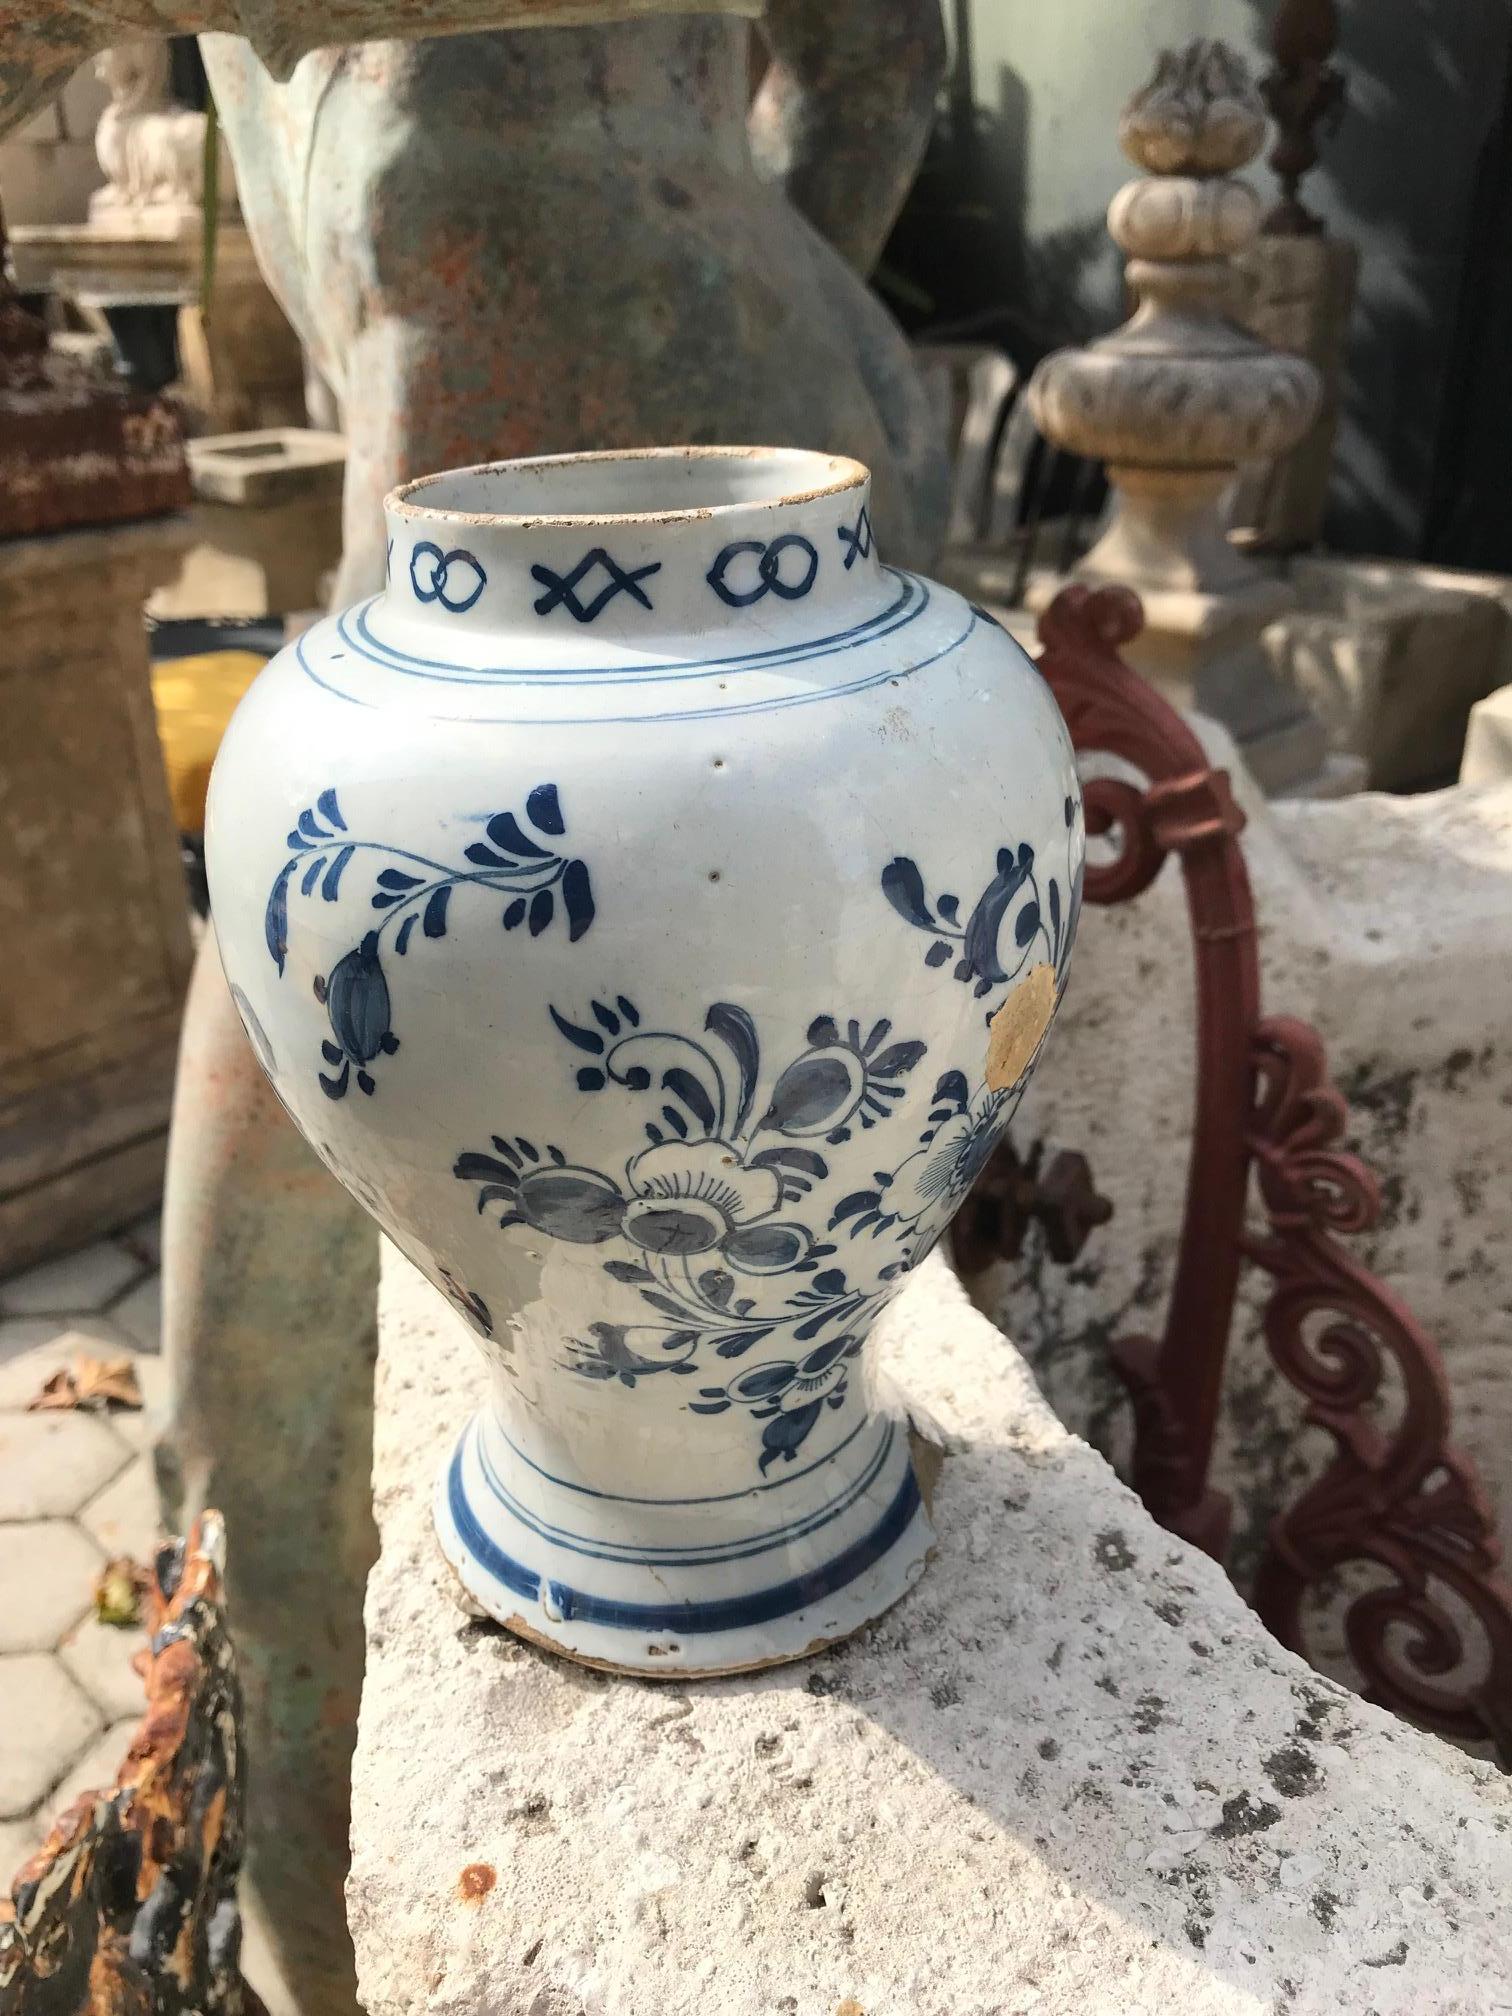 Très beau vase ou jarre en poterie Delft bleu et blanc du 18e siècle. De forme vasiforme typique, avec un décor de paysage en chinoiserie bleu moyen et profond, une bordure décorée sur le bord supérieur, et des cercles miroirs à la base . Peint à la